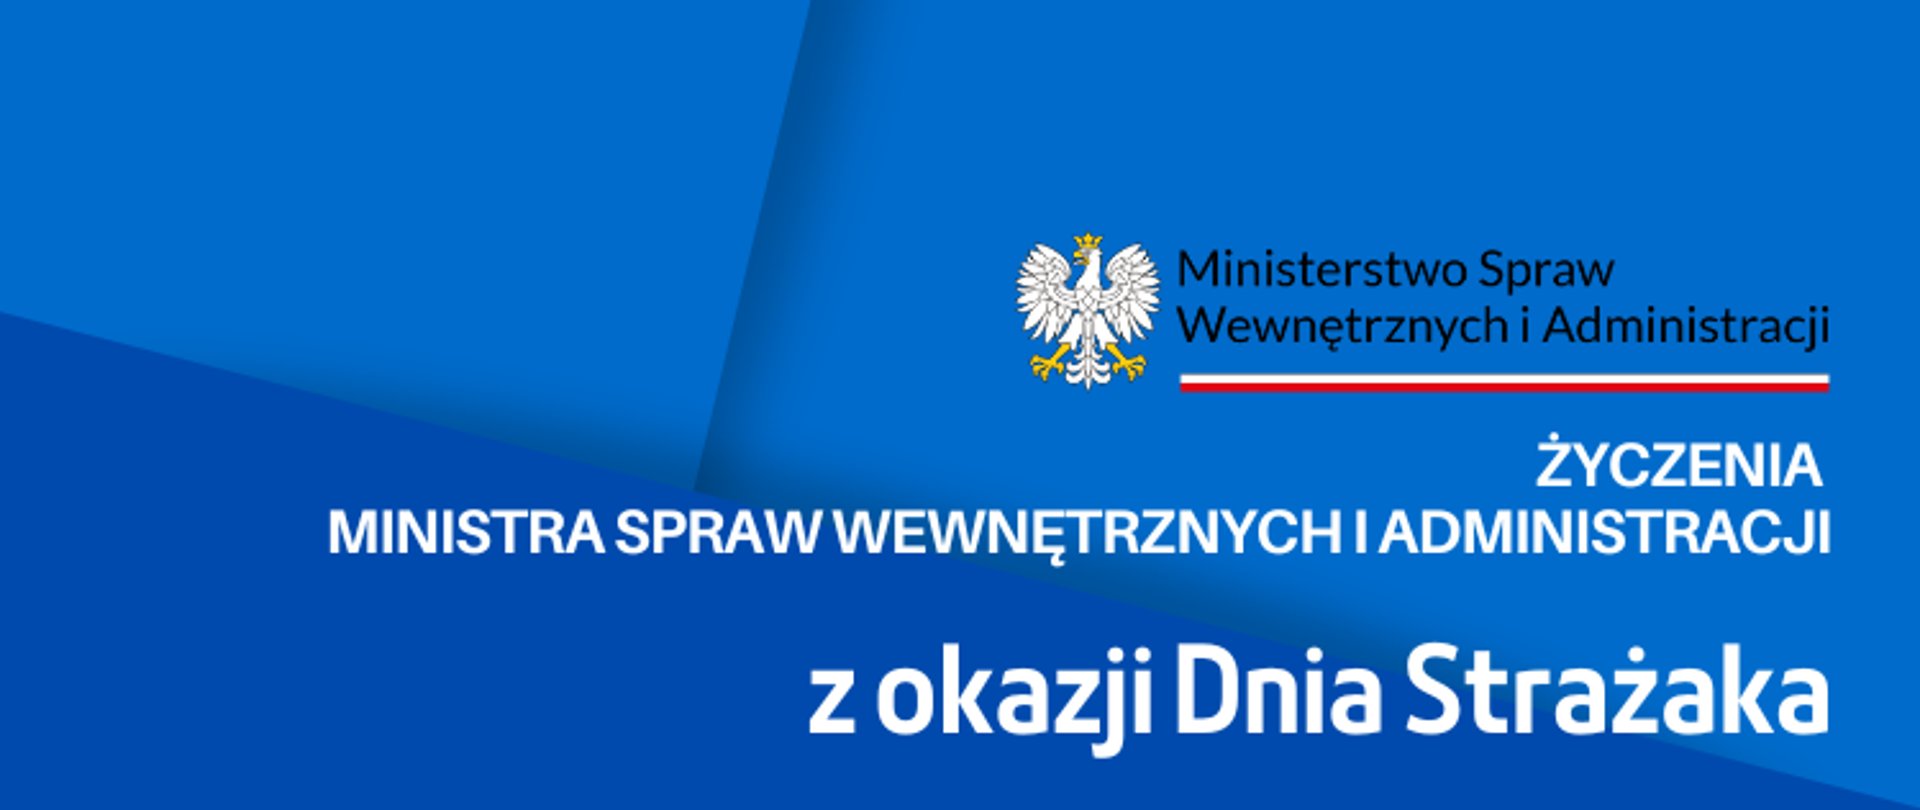 Życzenia Ministra Spraw Wewnętrznych i Administracji z okazji Dnia Strażaka - banner